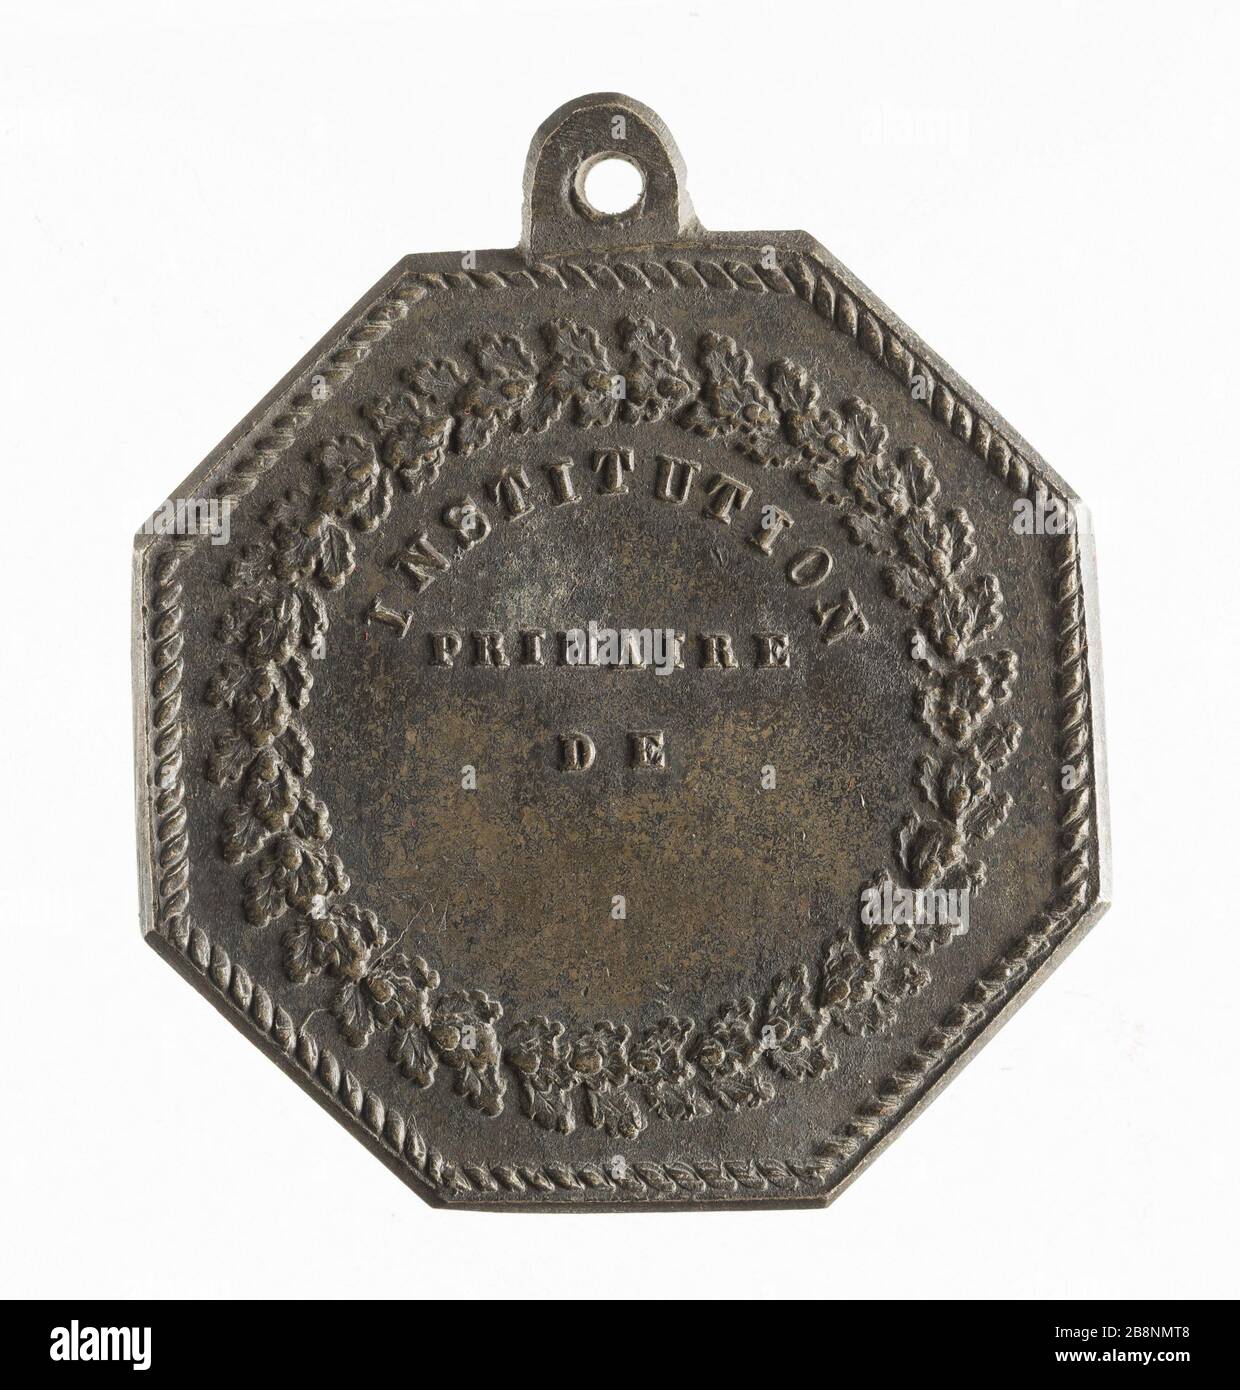 Merit Award of Primary Institution, nineteenth century 'Prix du mérite de l'Institution primaire, XIXe siècle'. Métal. Paris, musée Carnavalet. Stock Photo